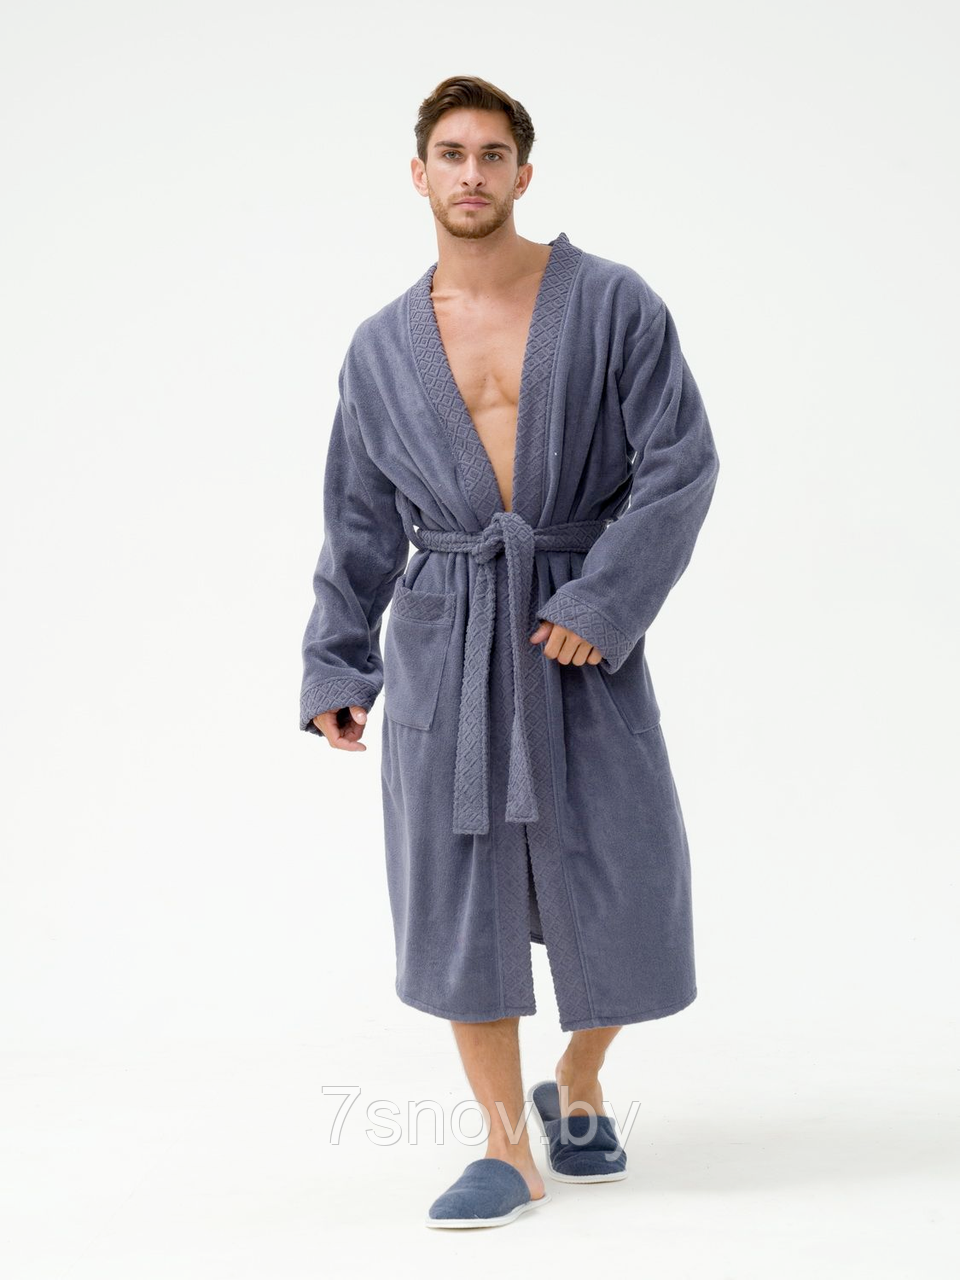 Мужской махровый халат размер 46-48 серый